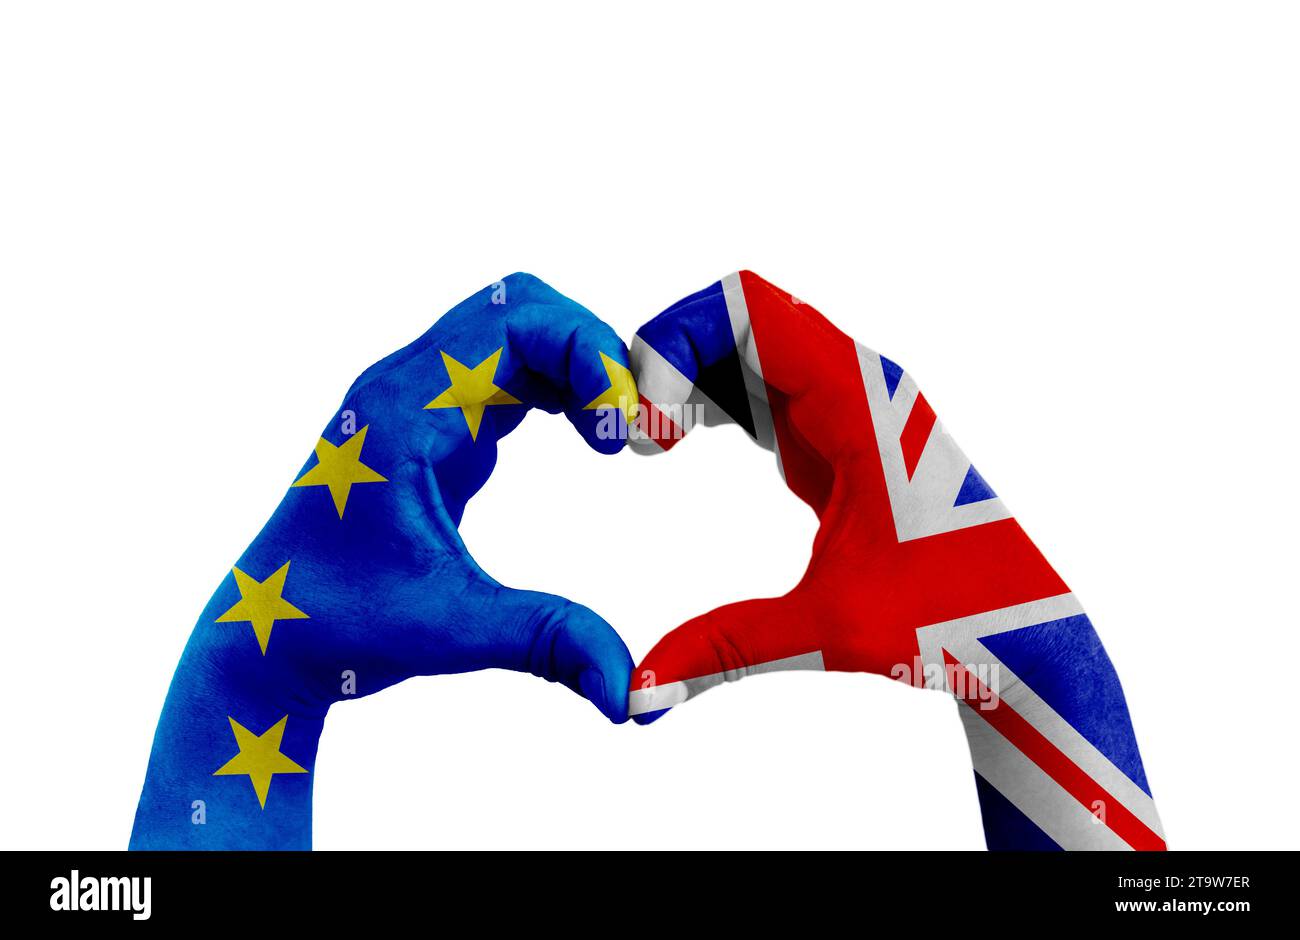 brexit, les mains de l'homme en forme de coeur modelé avec le drapeau de l'Union européenne bleu et le drapeau de la grande-bretagne royaume-uni sur le fond blanc, vote référendum pour le concept de sortie du royaume-uni Banque D'Images